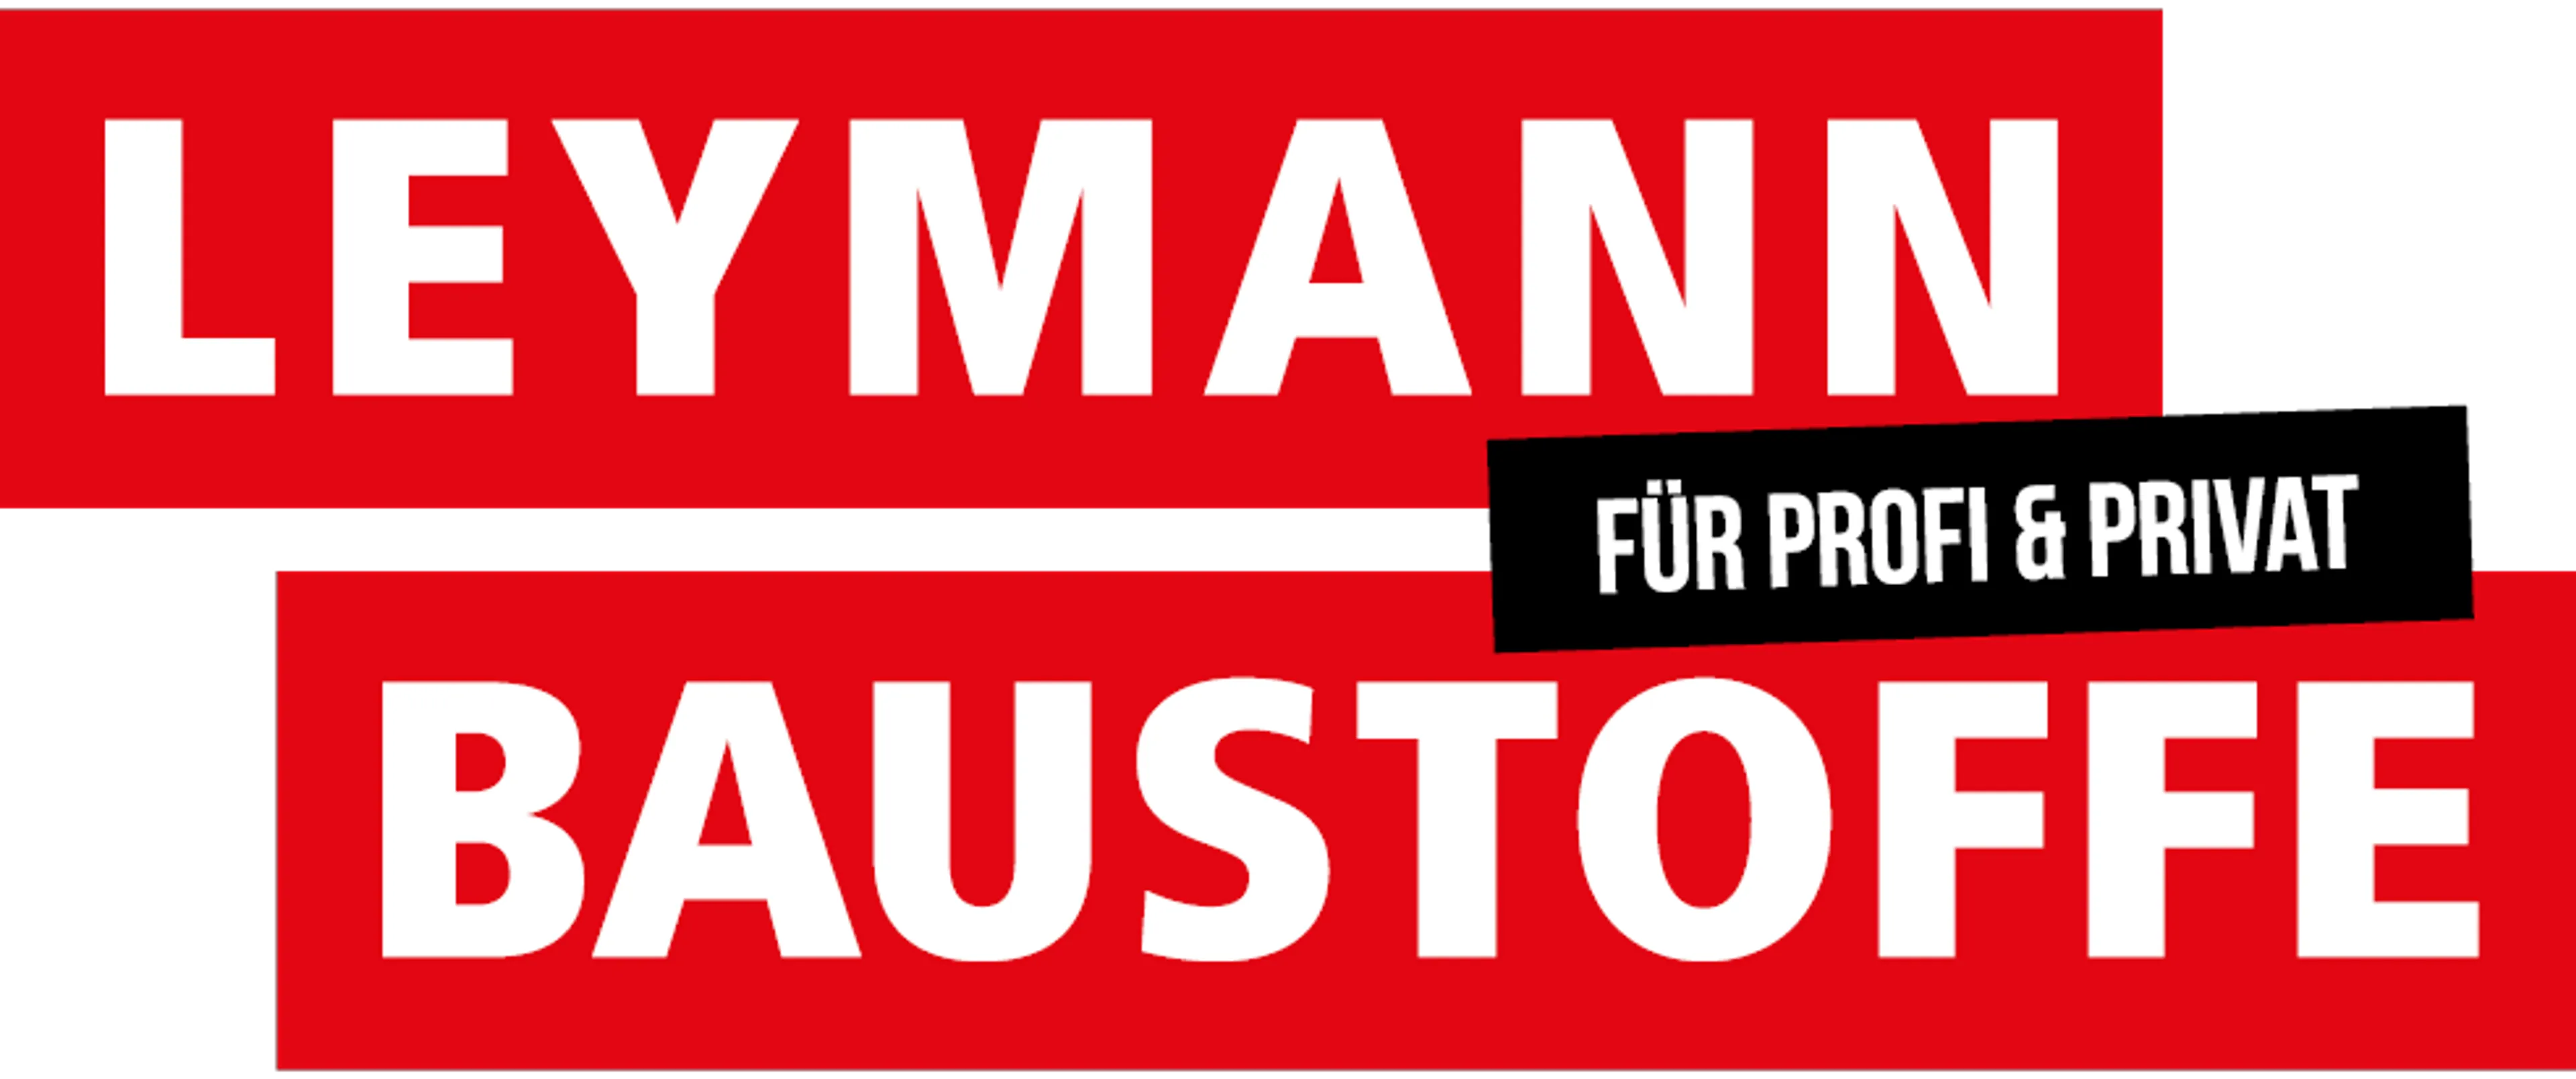 LEYMANN BAUSTOFFE logo